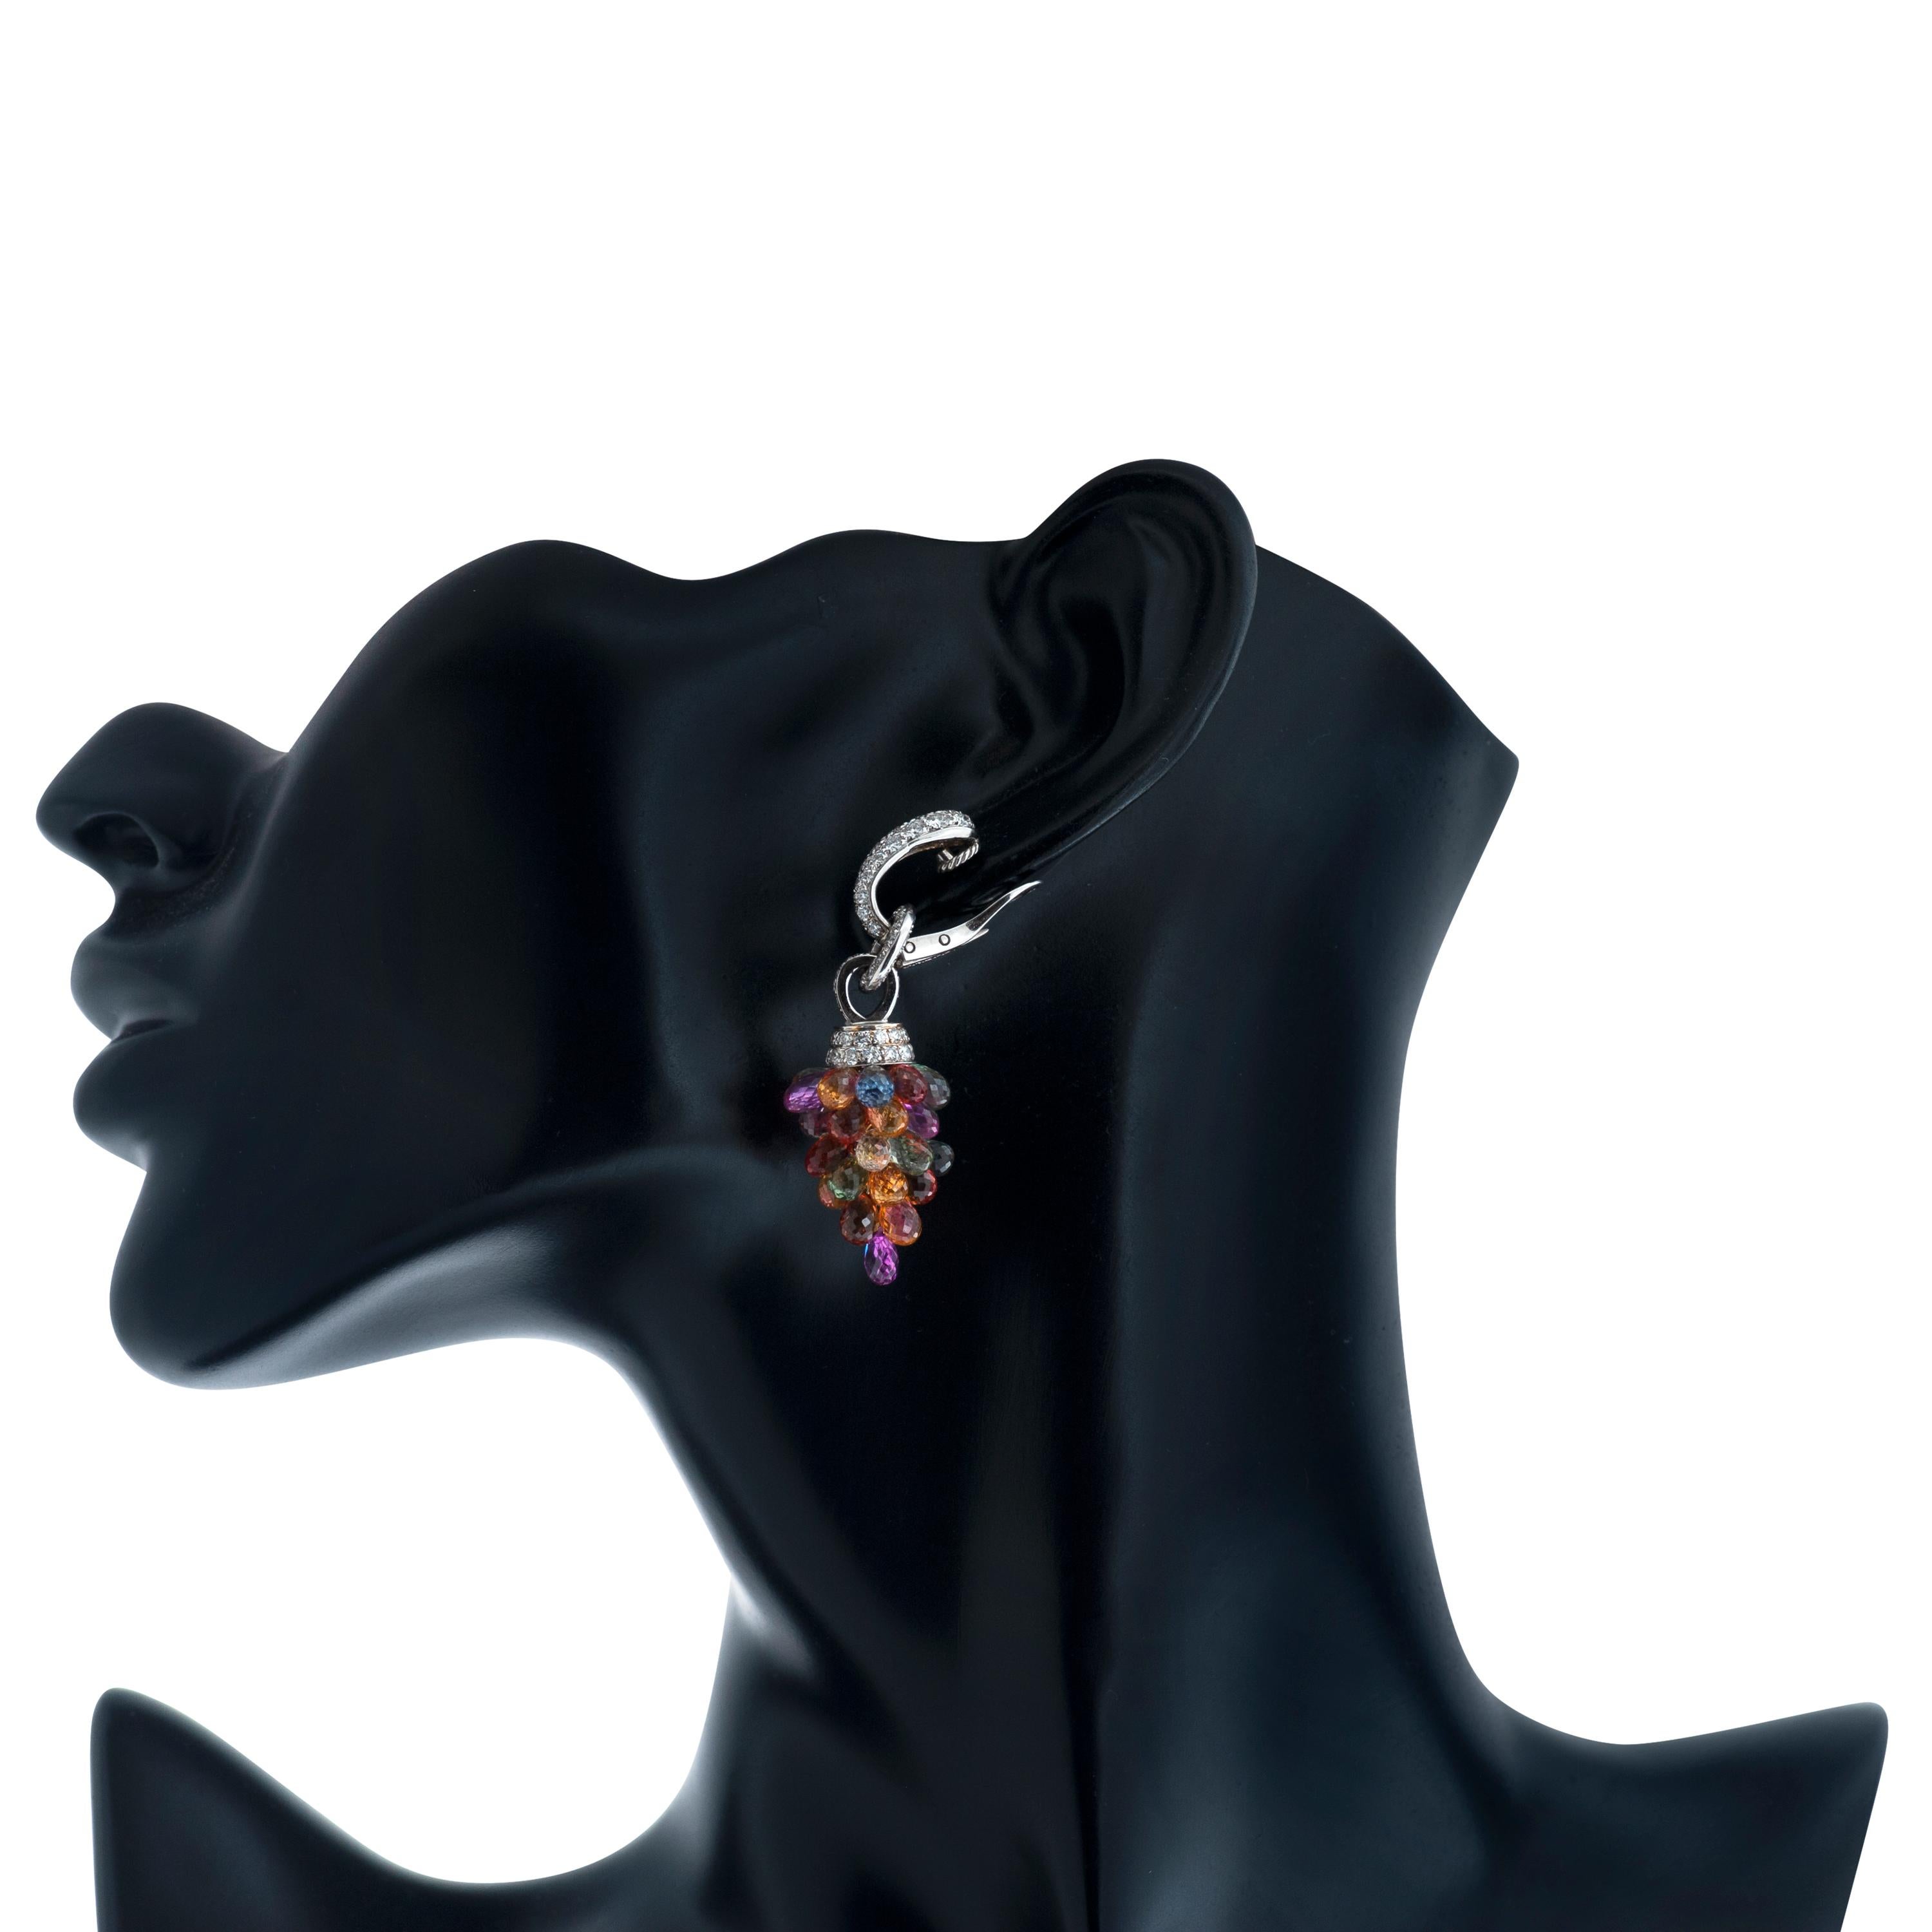 Dieses Paar Ohrhänger von Graff besteht aus Briolette-Saphiren in verschiedenen Blau-, Grün-, Gelb-, Orange-, Rosa- und Violetttönen.  Sowie etwa 3,20 Karat runde Diamanten im Brillantschliff, Farbe F-G und Reinheit VS. 

Ungefähr 2